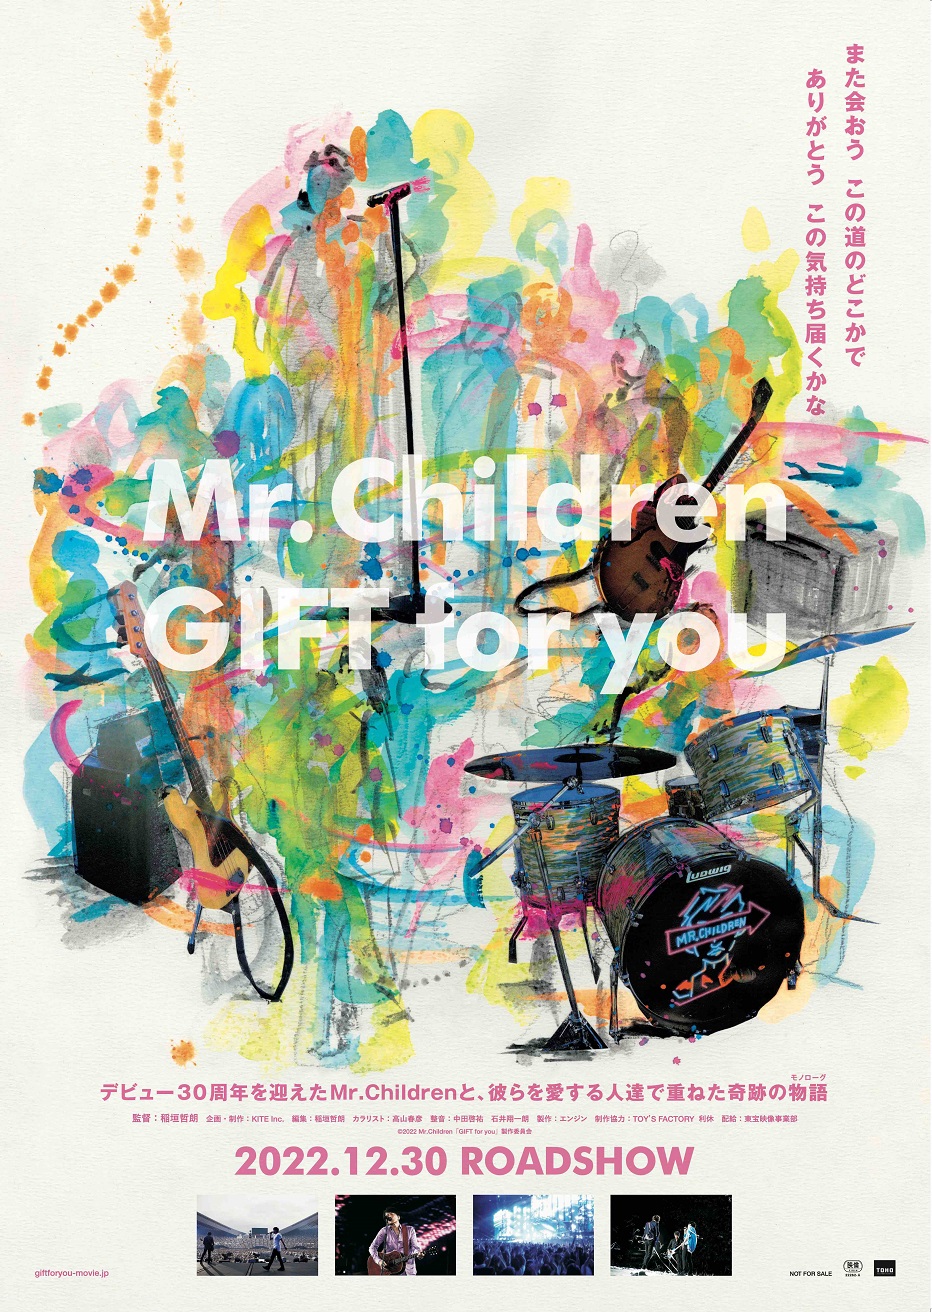 映画『Mr.Children「GIFT for you」』、ライブ映像とファンやスタッフ